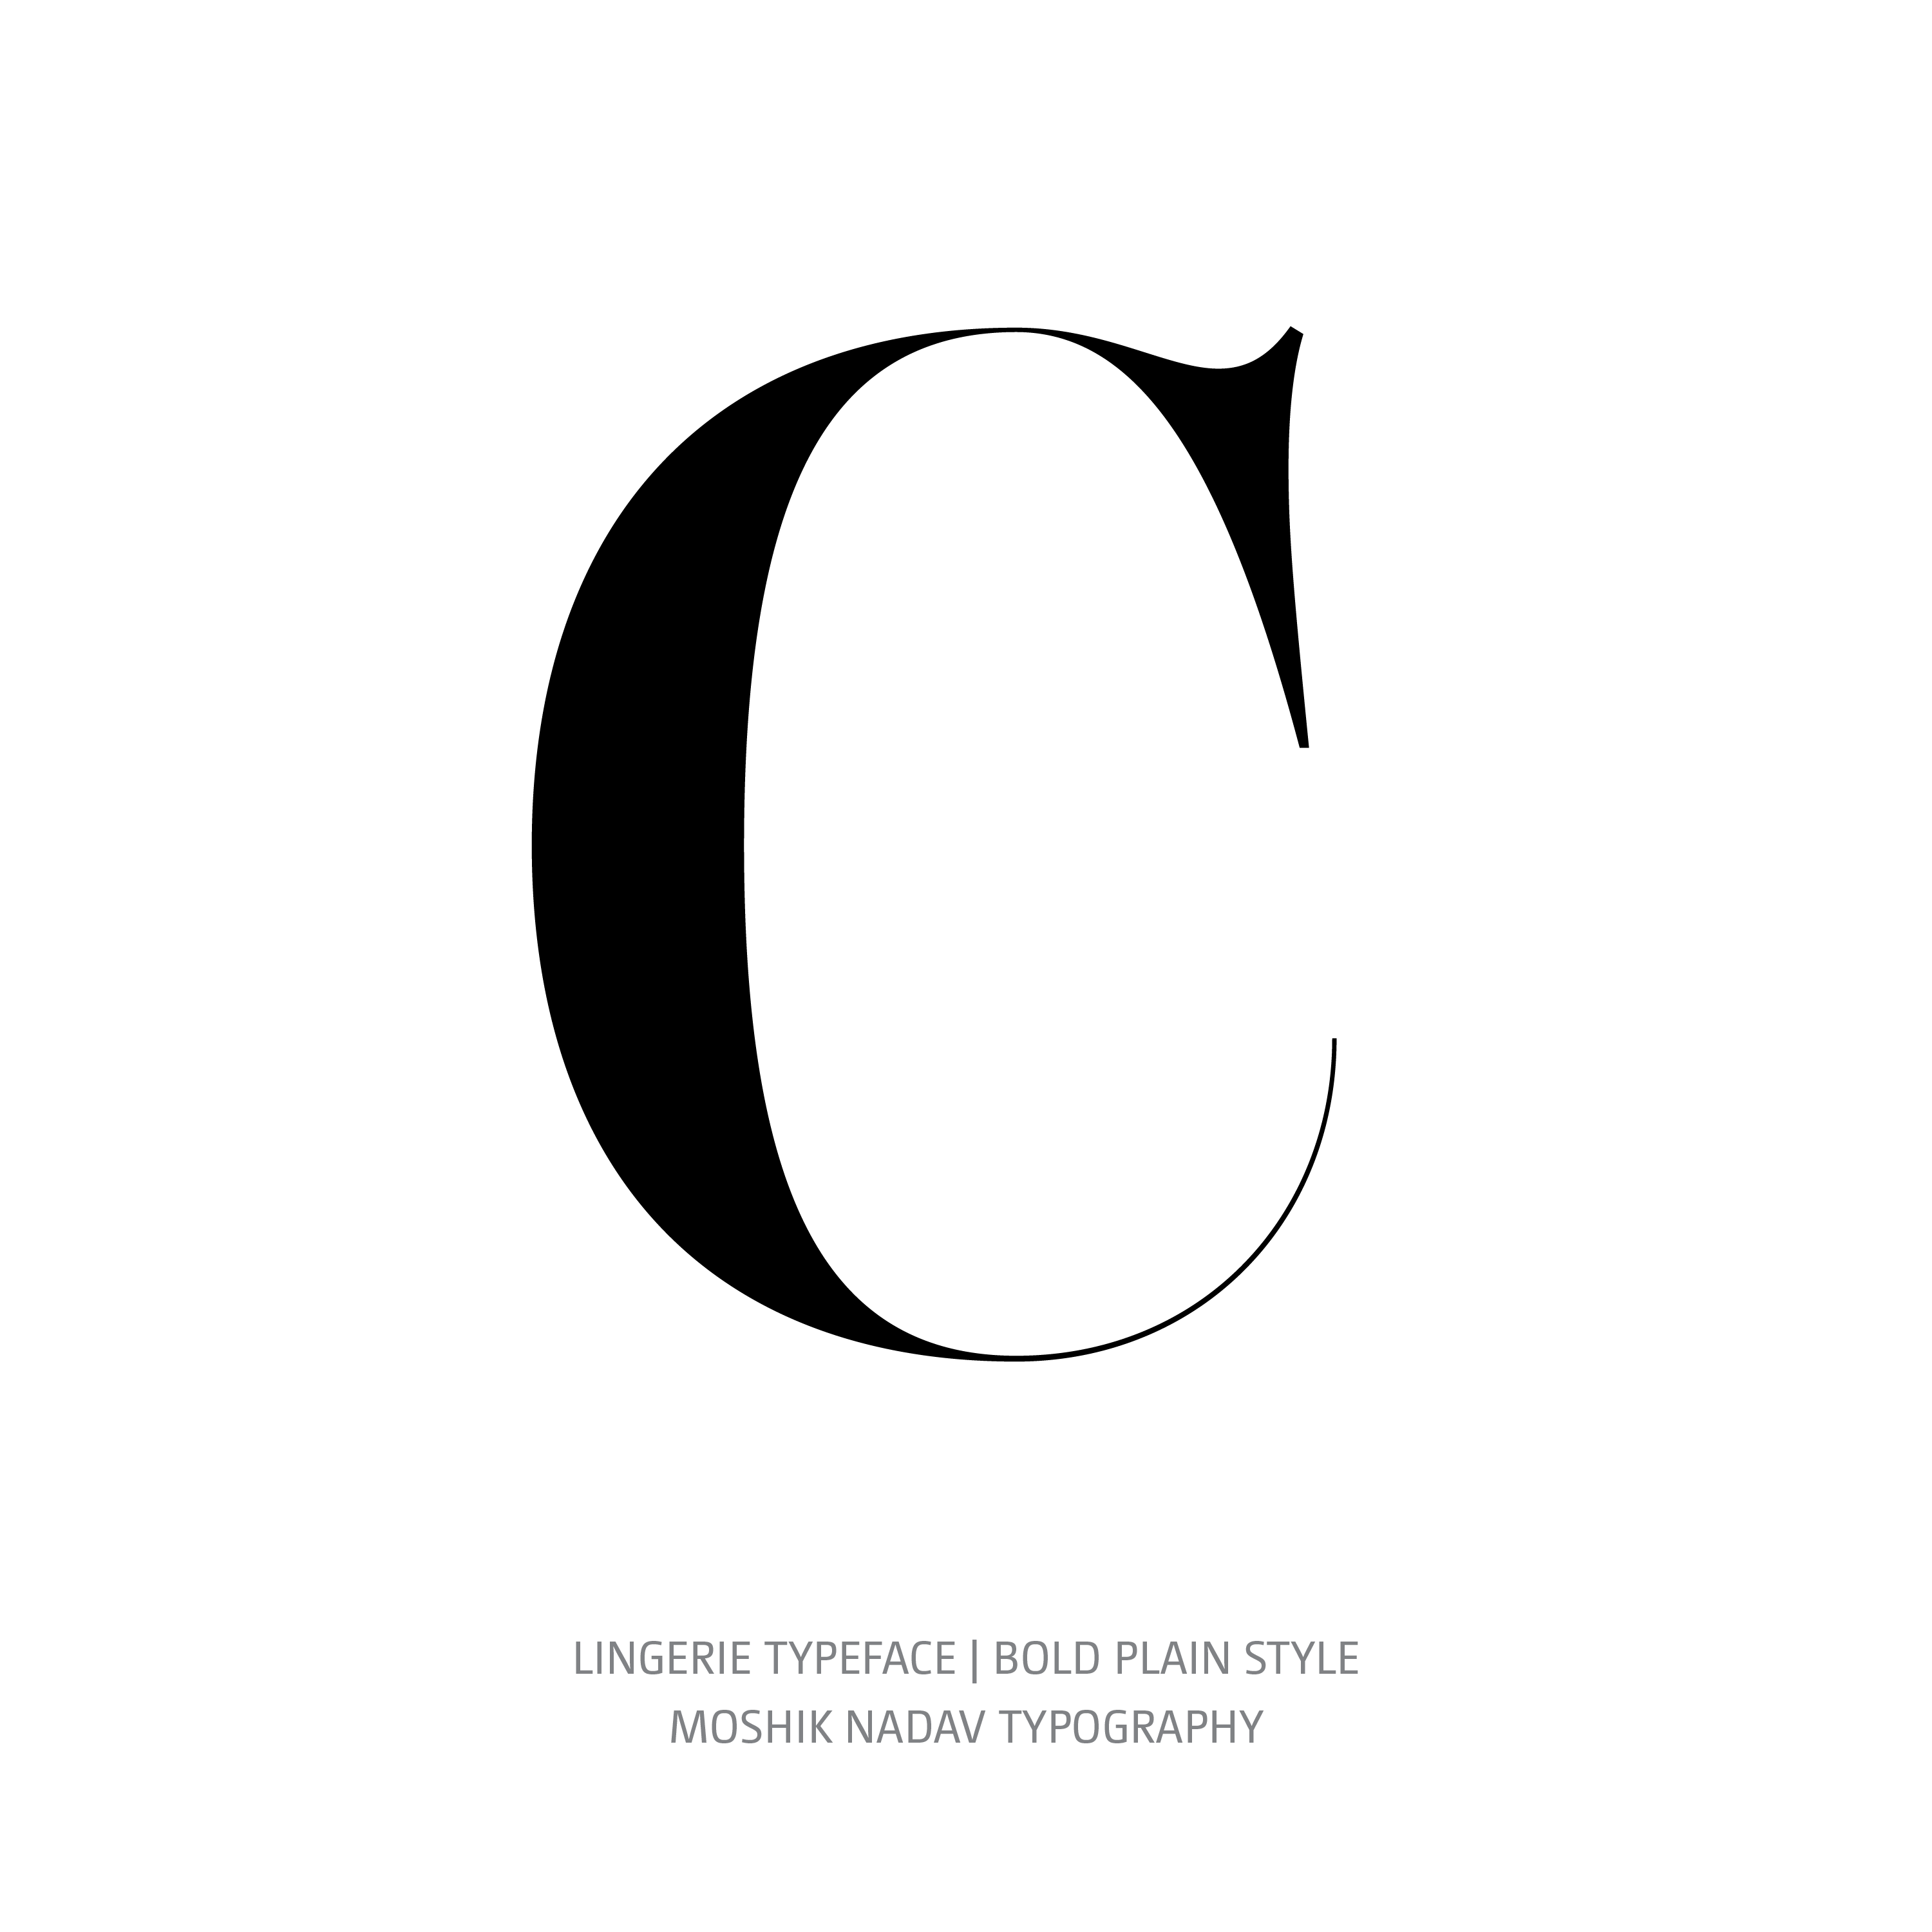 Lingerie Typeface Bold Plain C